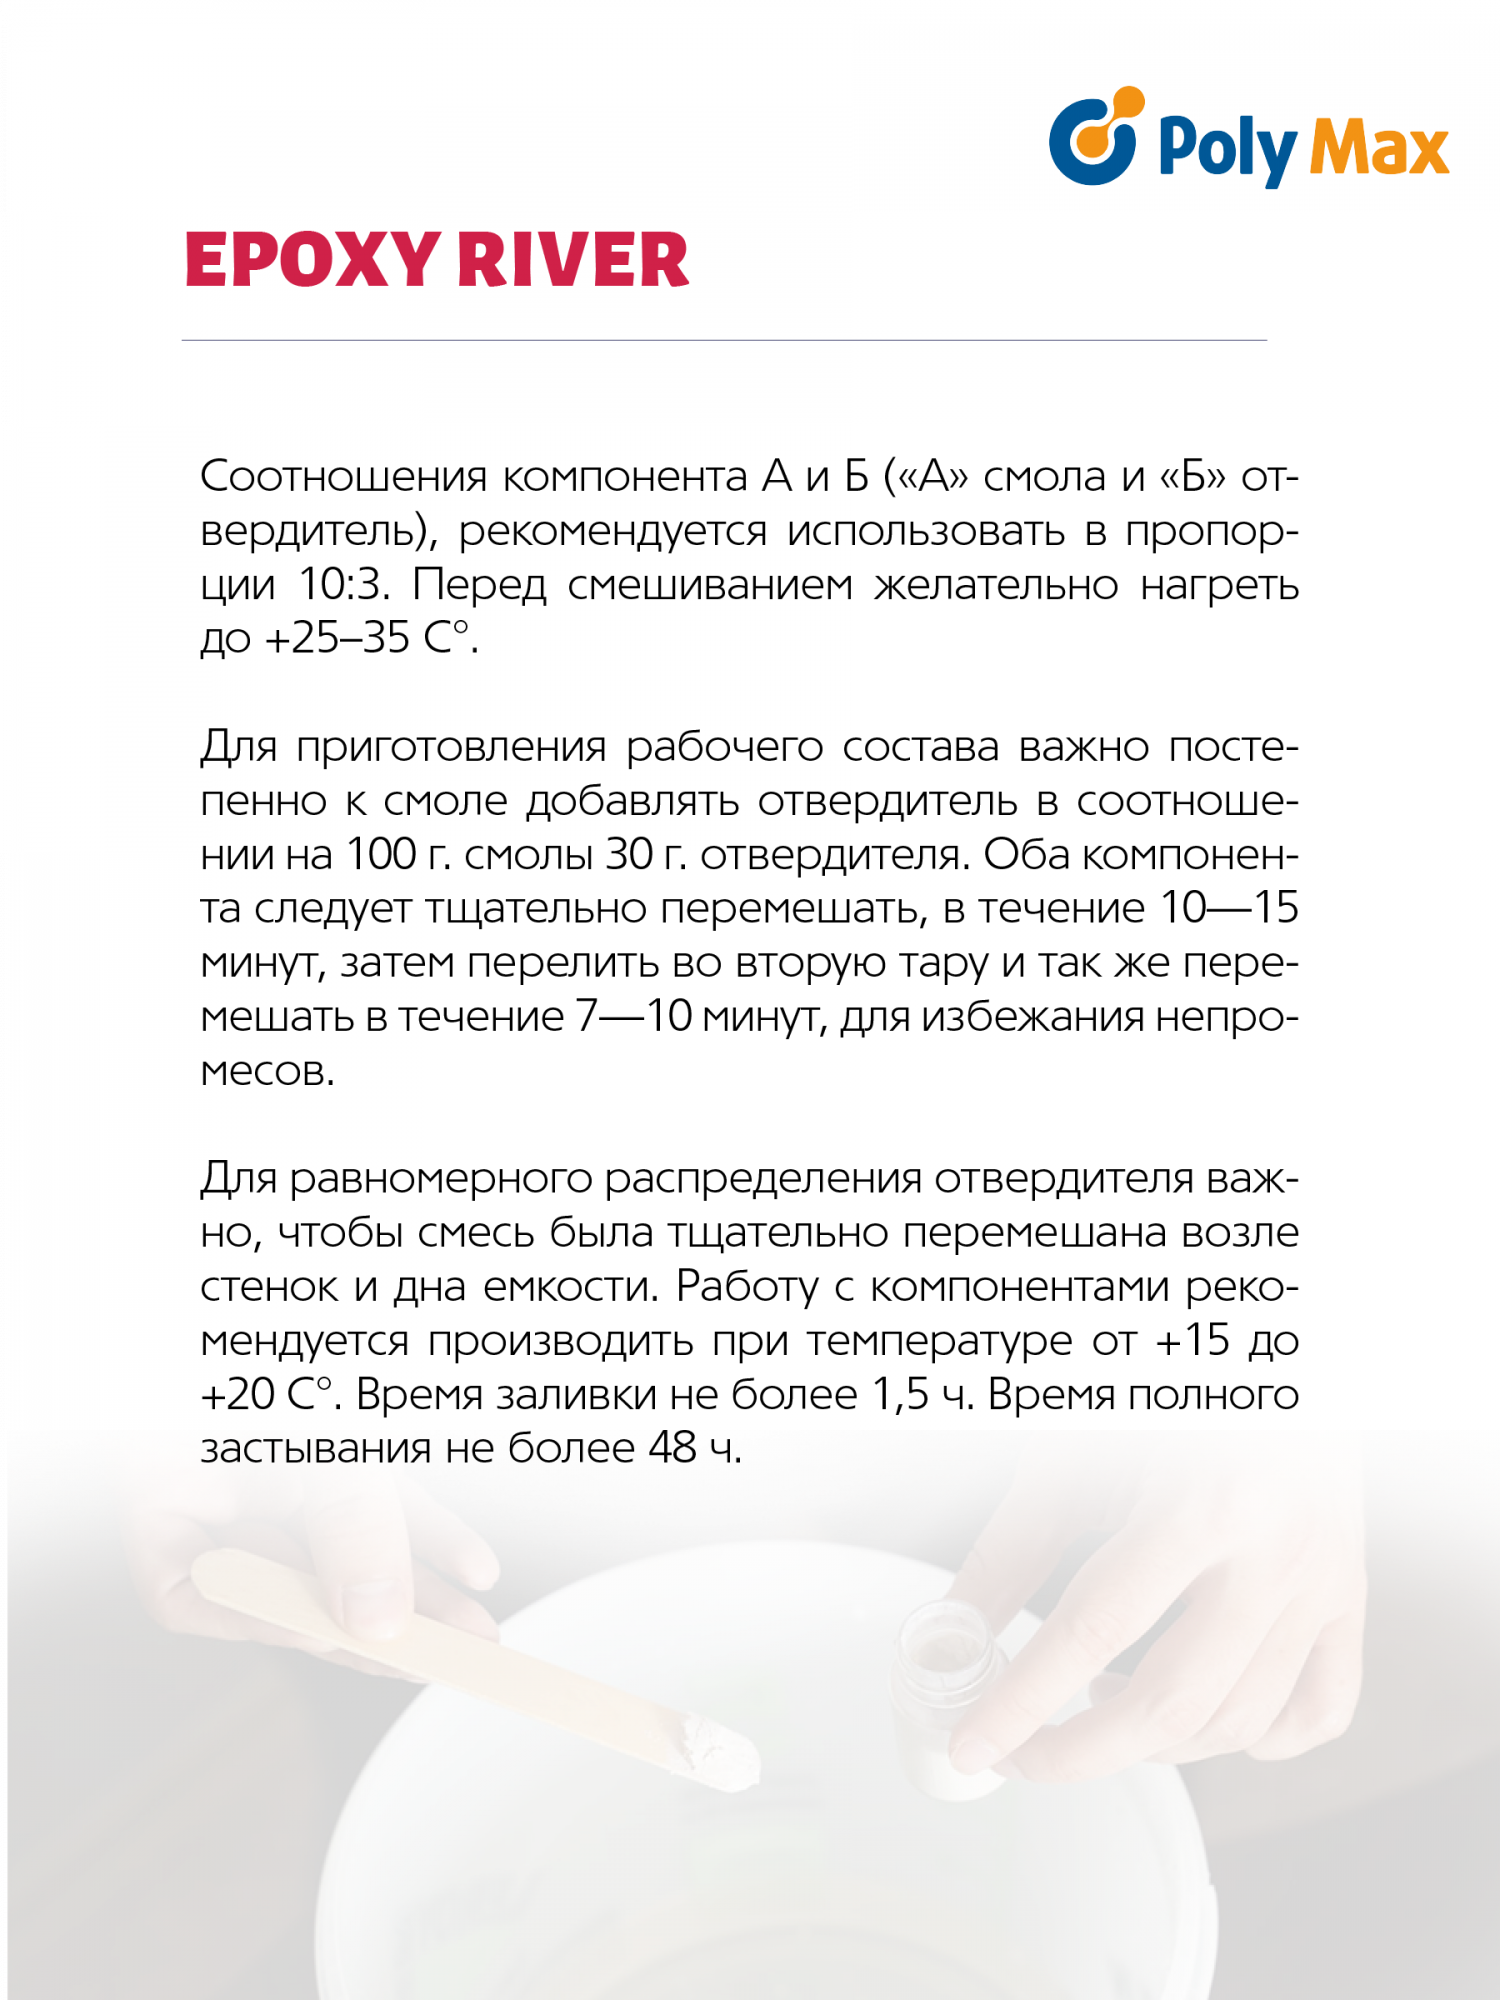 Эпоксидная смола Epoxy River 65 г PolyMax - купить в ИП Гончаров Максим Андреевич, цена на Мегамаркет